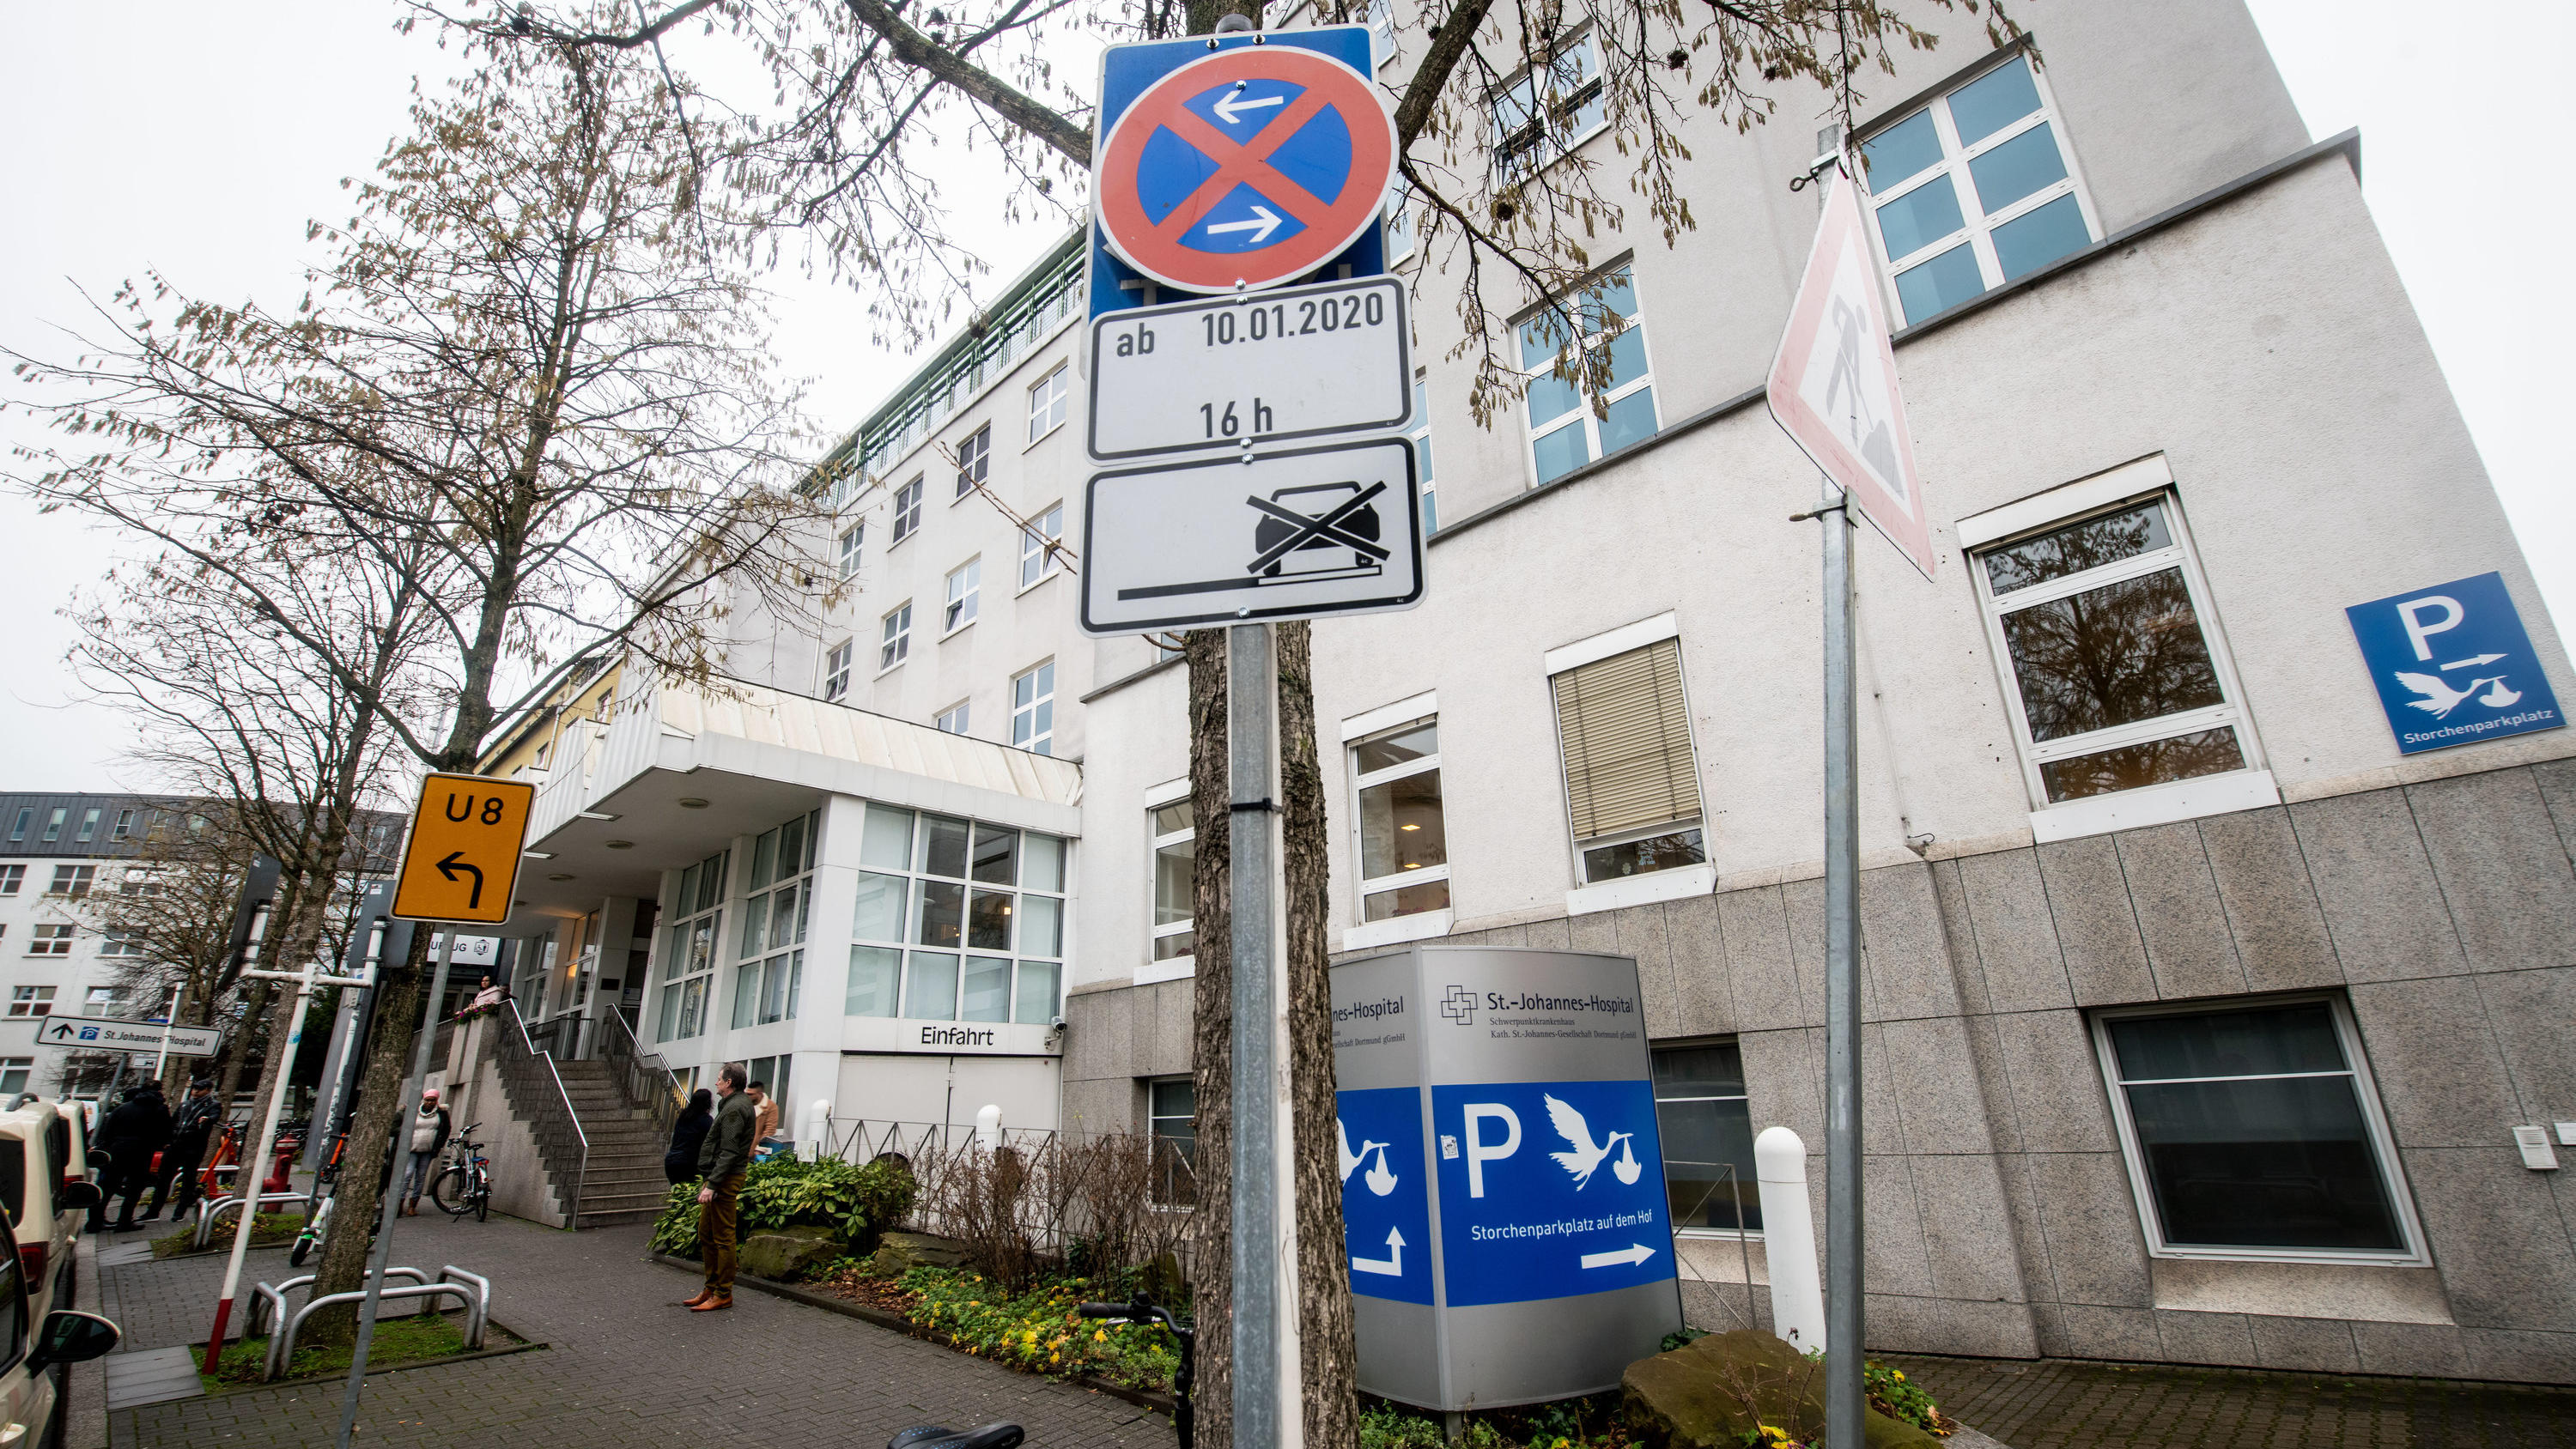 Parkverbotsschilder vor dem St.-Johannes-Hospital in Dortmund